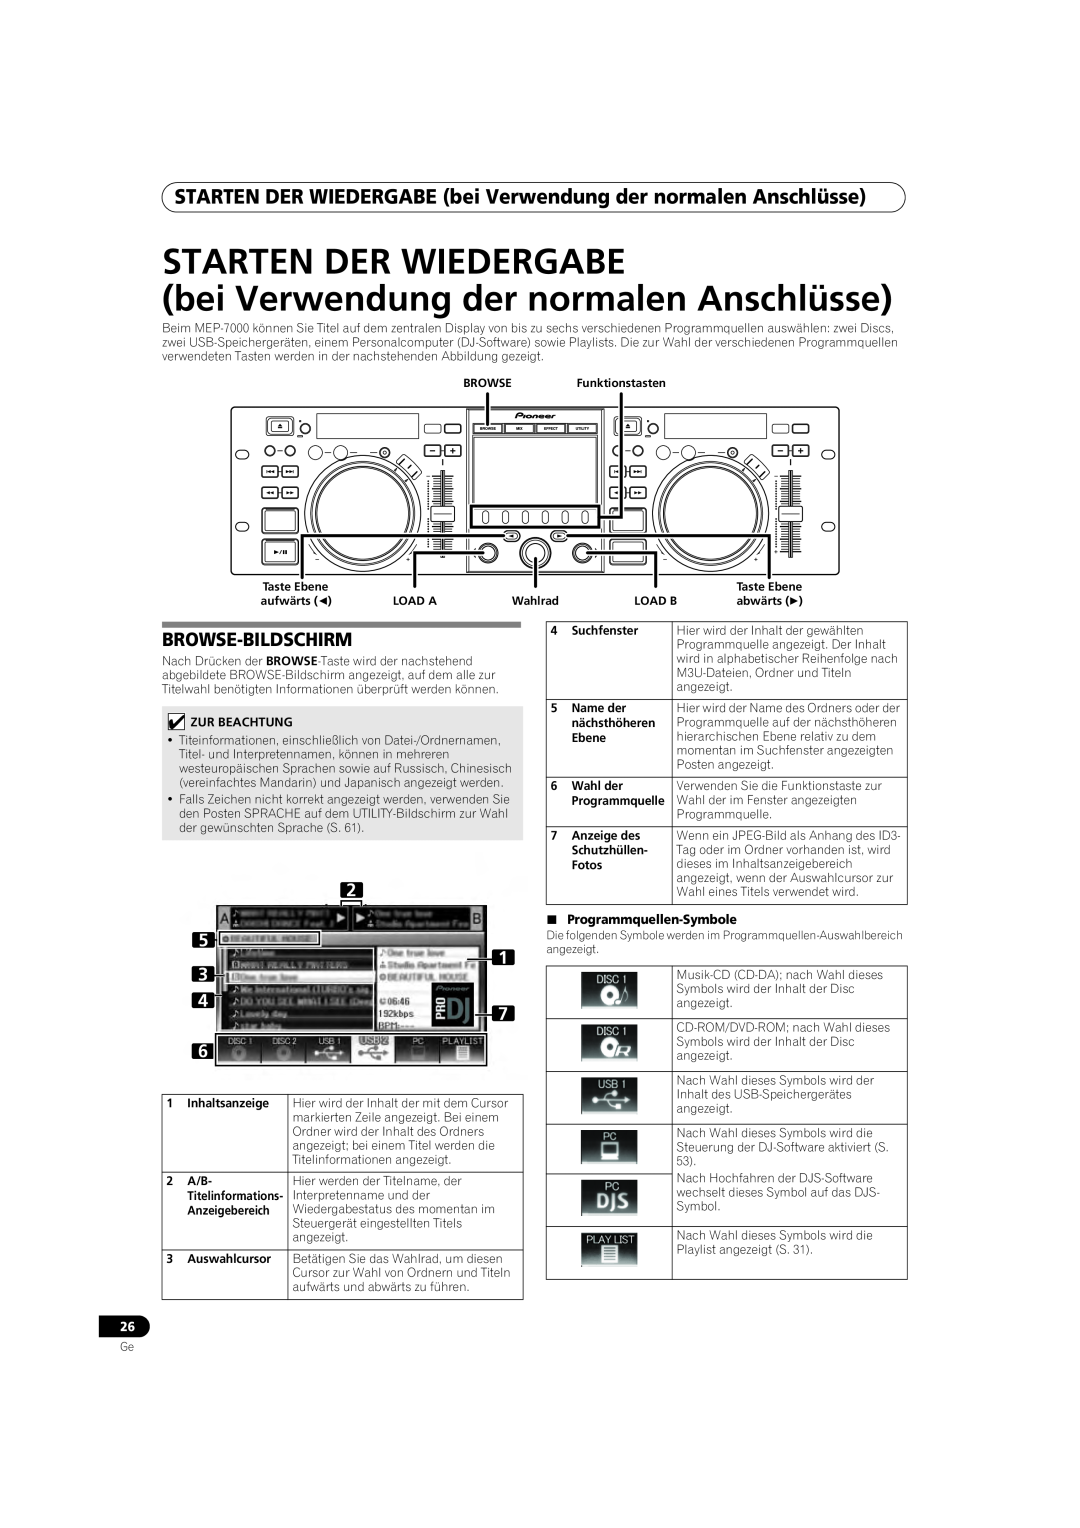 Pioneer MEP-7000 operating instructions Starten Der Wiedergabe, bei Verwendung der normalen Anschlüsse, Browse-Bildschirm 